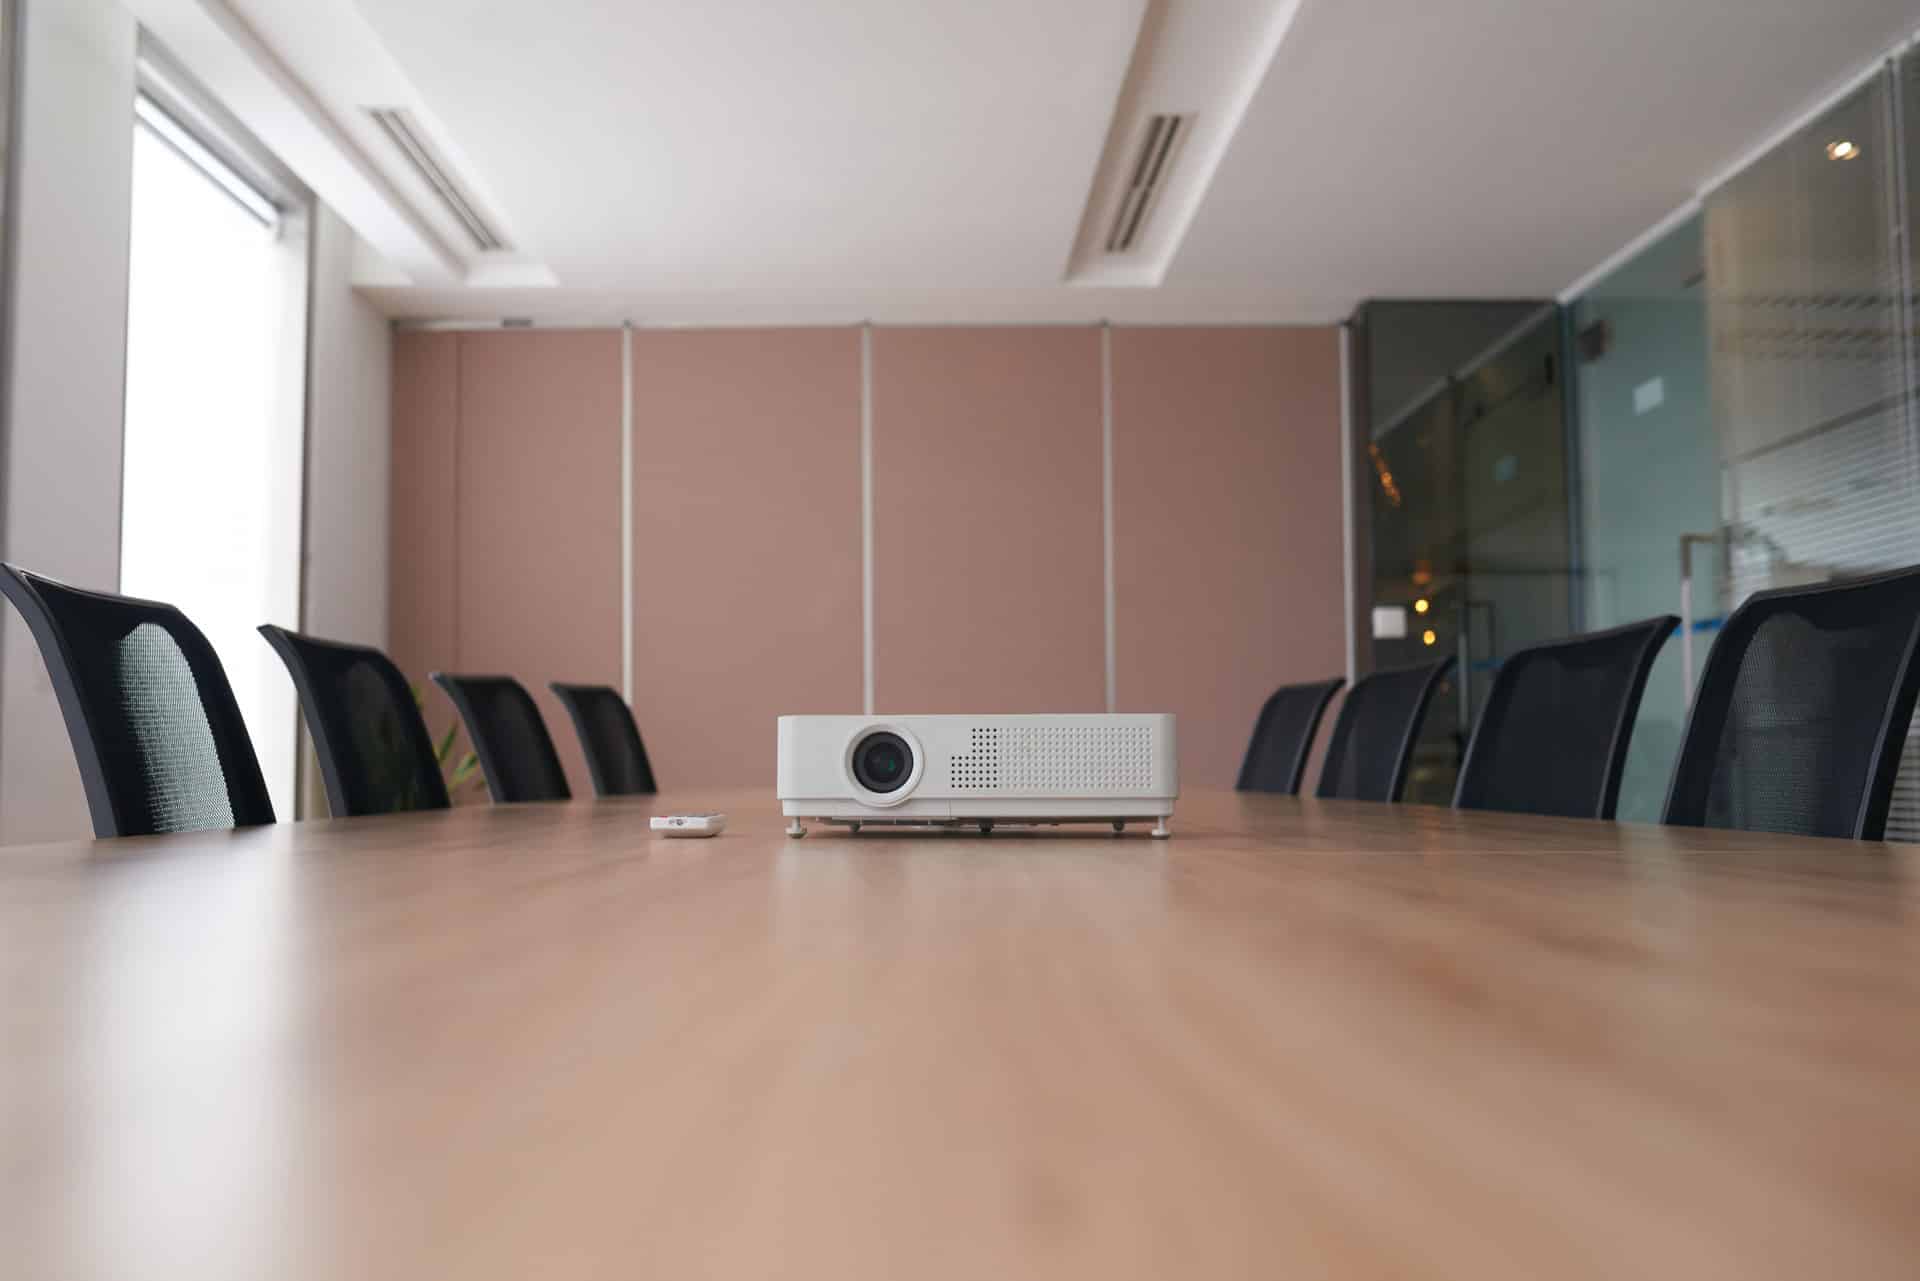 Salle de réunion vide avec vidéo projecteur